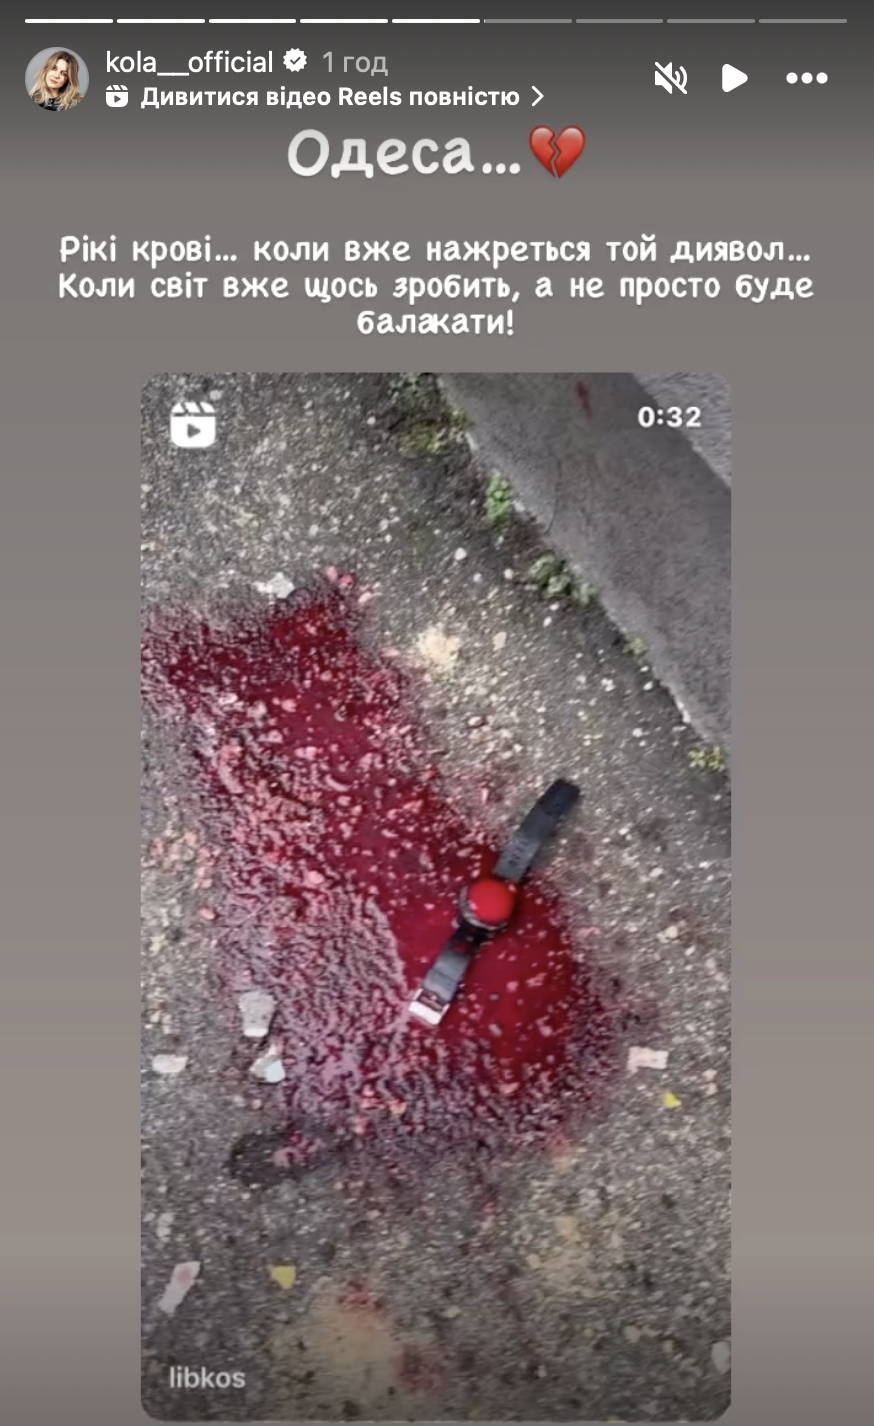 "Когда уже нажрется тот дьявол?!" Украинские звезды с болью и ненавистью отреагировали на ракетную атаку России по Одессе